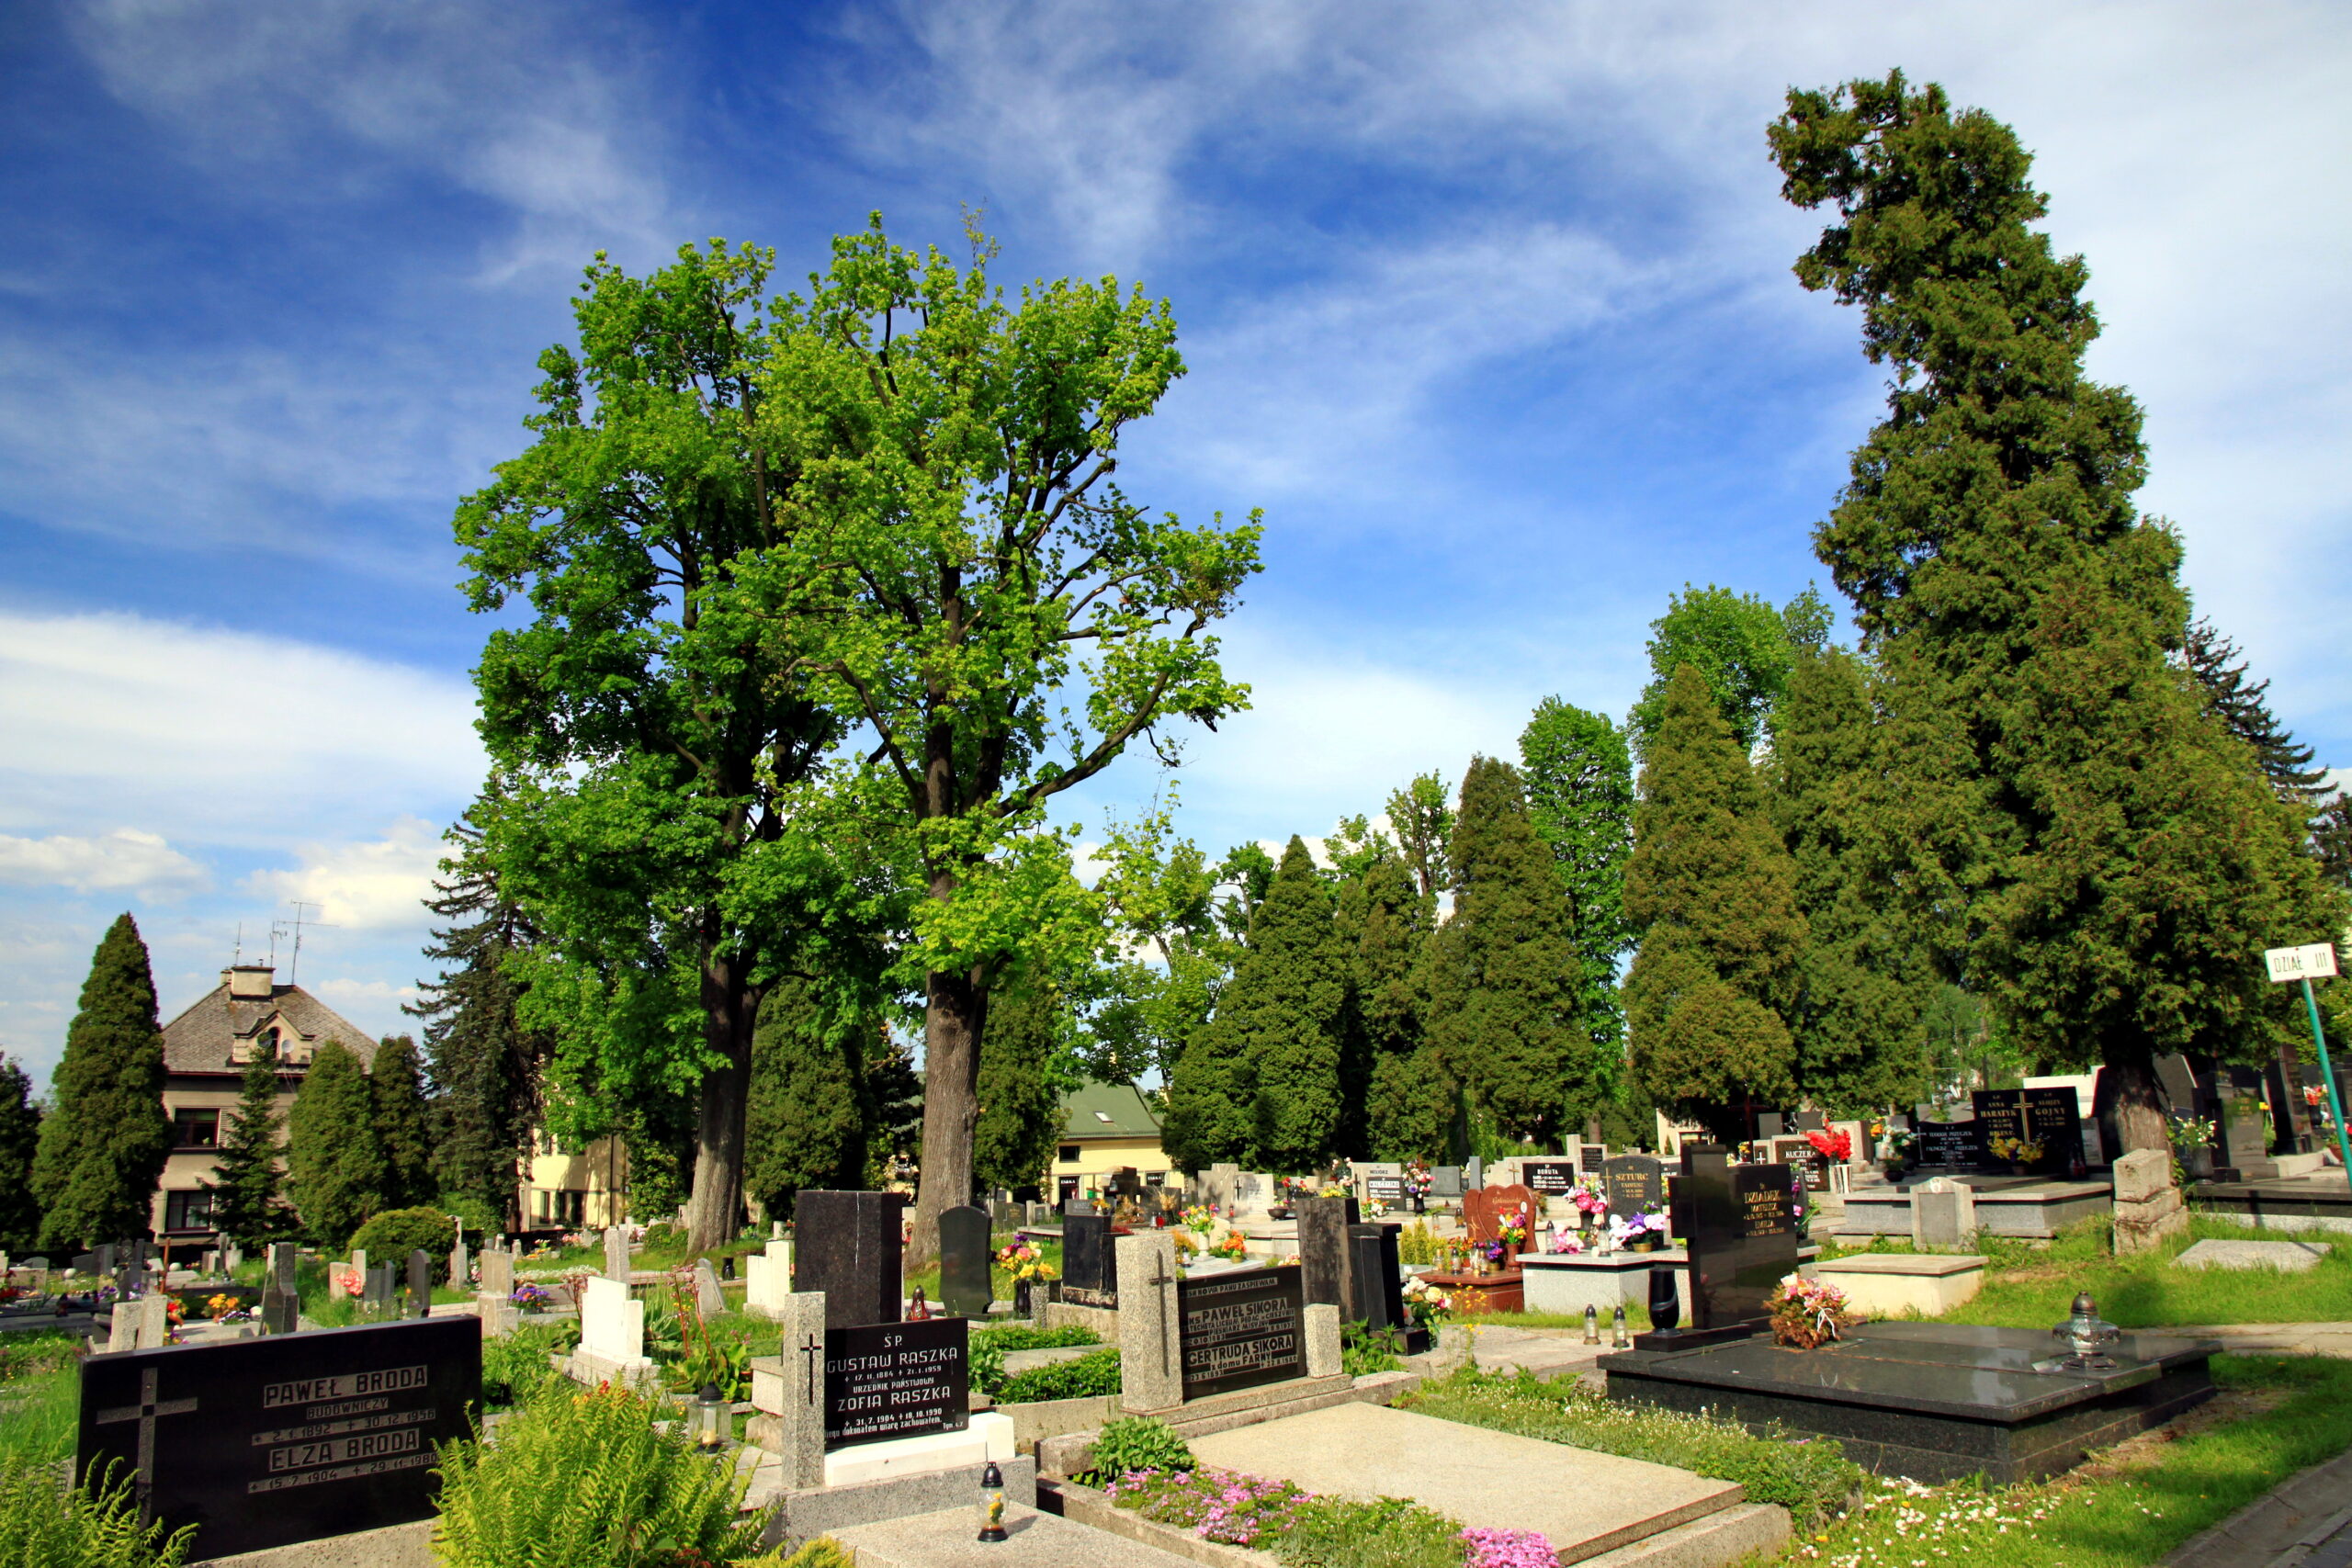 Cmentarz ewangelicko-augsburski z Cieszynie. Widok na groby wśród drzew.